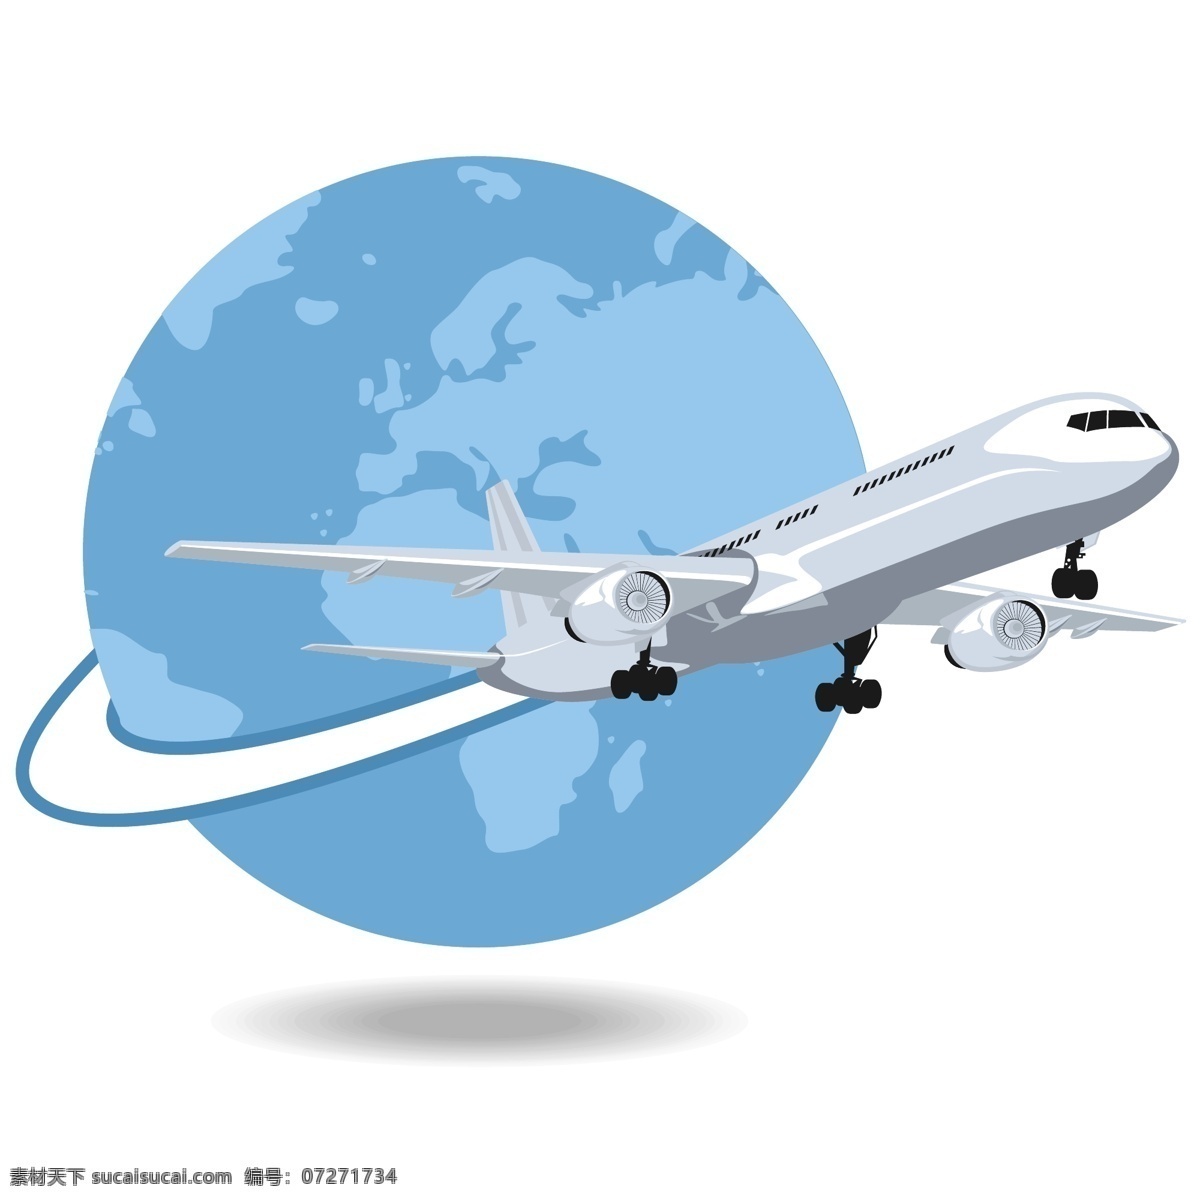 航空 航天 民航 飞机 客机 卡通 航空素材 环球飞行 旅游 度假 矢量素材 起飞 分层 背景素材